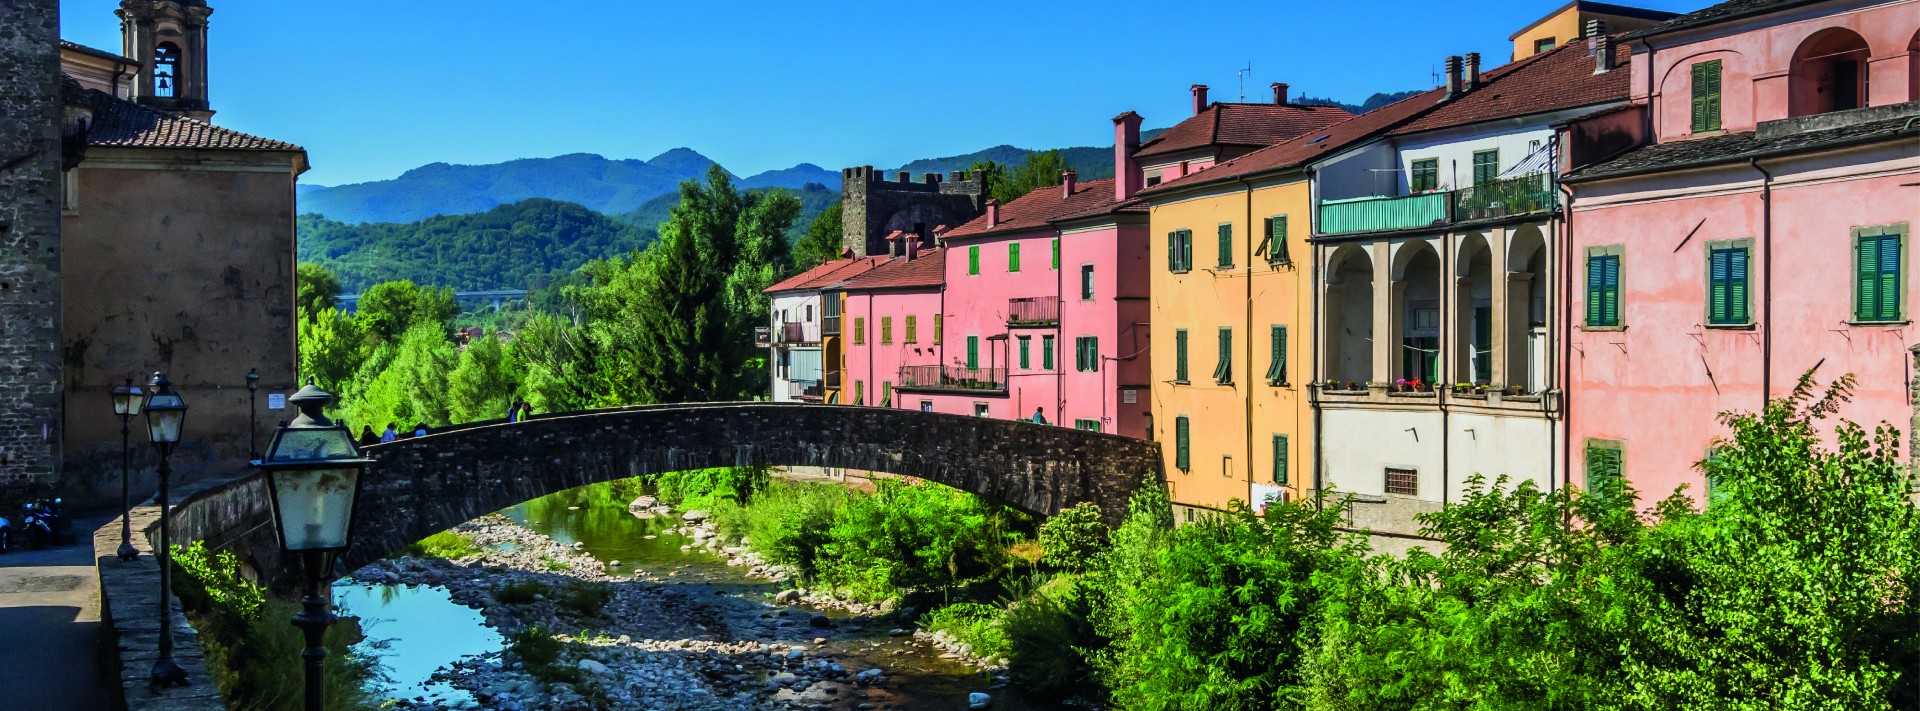 livre de tourisme et de photographies sur la Toscane